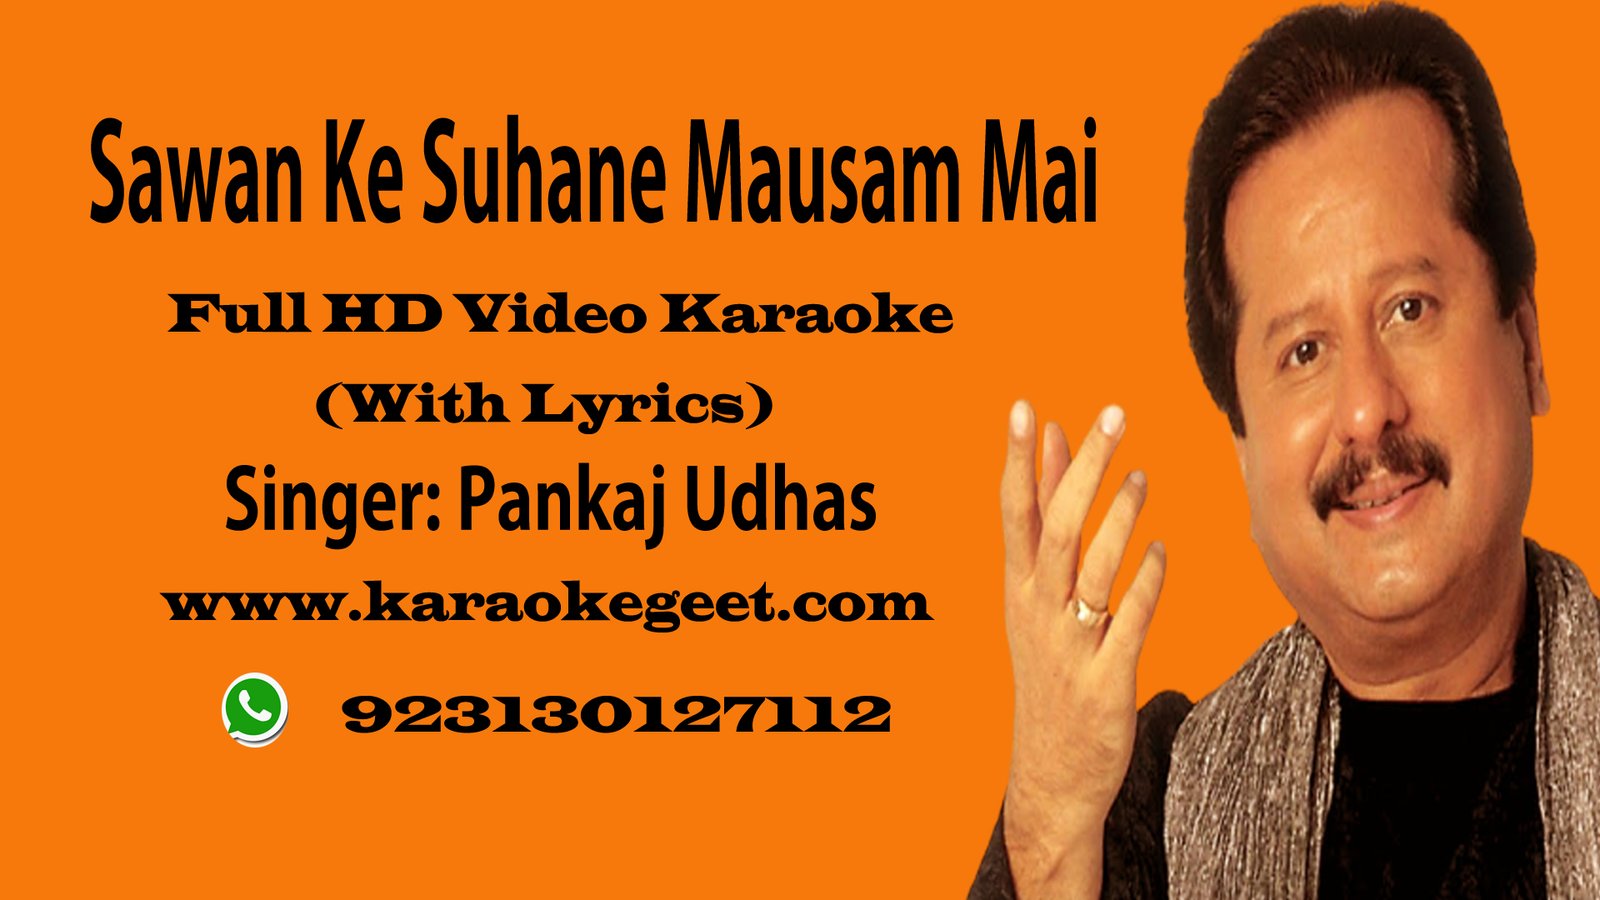 Sawan Ke Suhane mausam mai Video karaoke